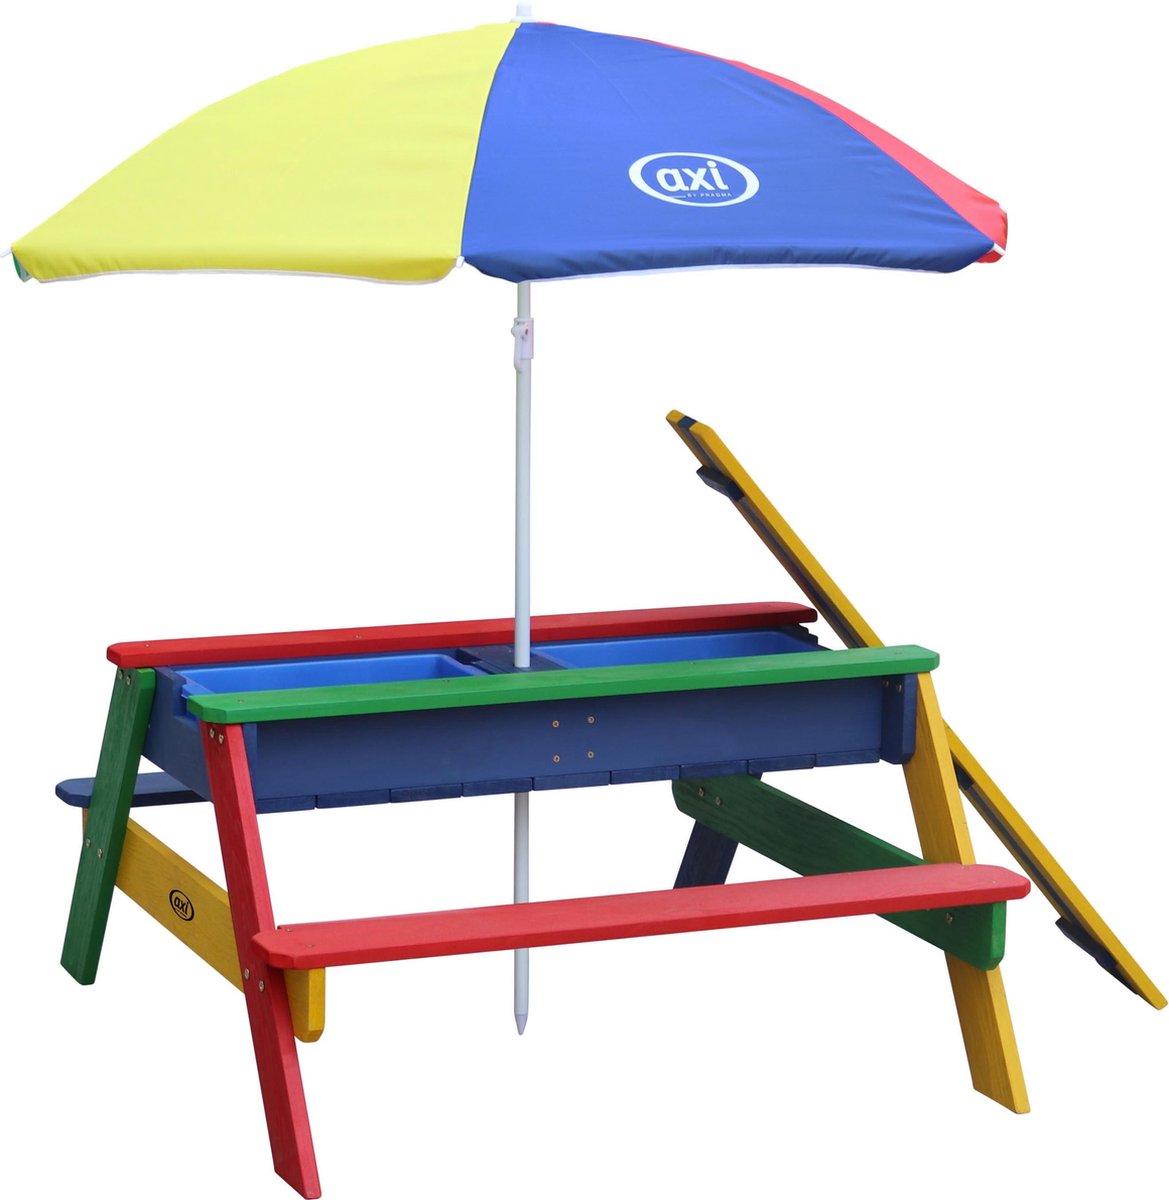 AXI Nick Zand & Water Picknicktafel in Regenboog kleuren - Incl. hoogte verst. Parasol - FSC hout - Picknick tafel voor kinderen van hout